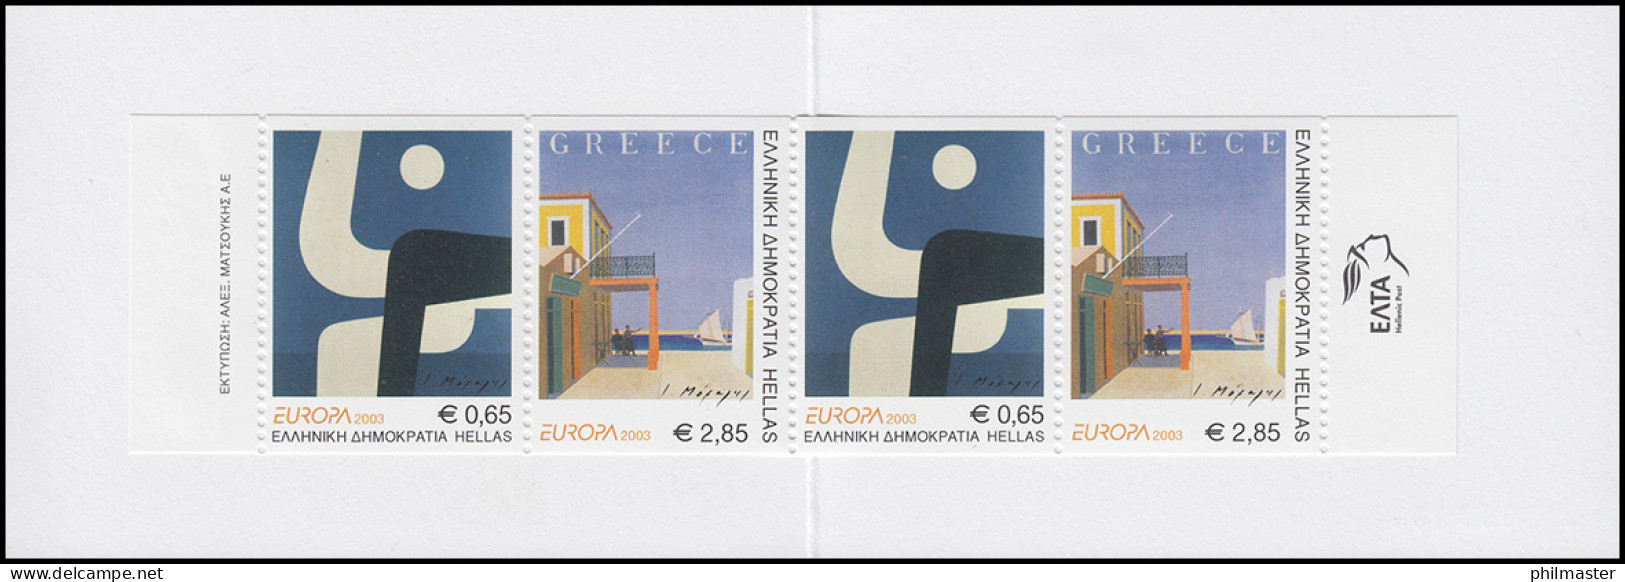 Griechenland Markenheftchen 25 Europa 2003, ** Postfrisch - Markenheftchen